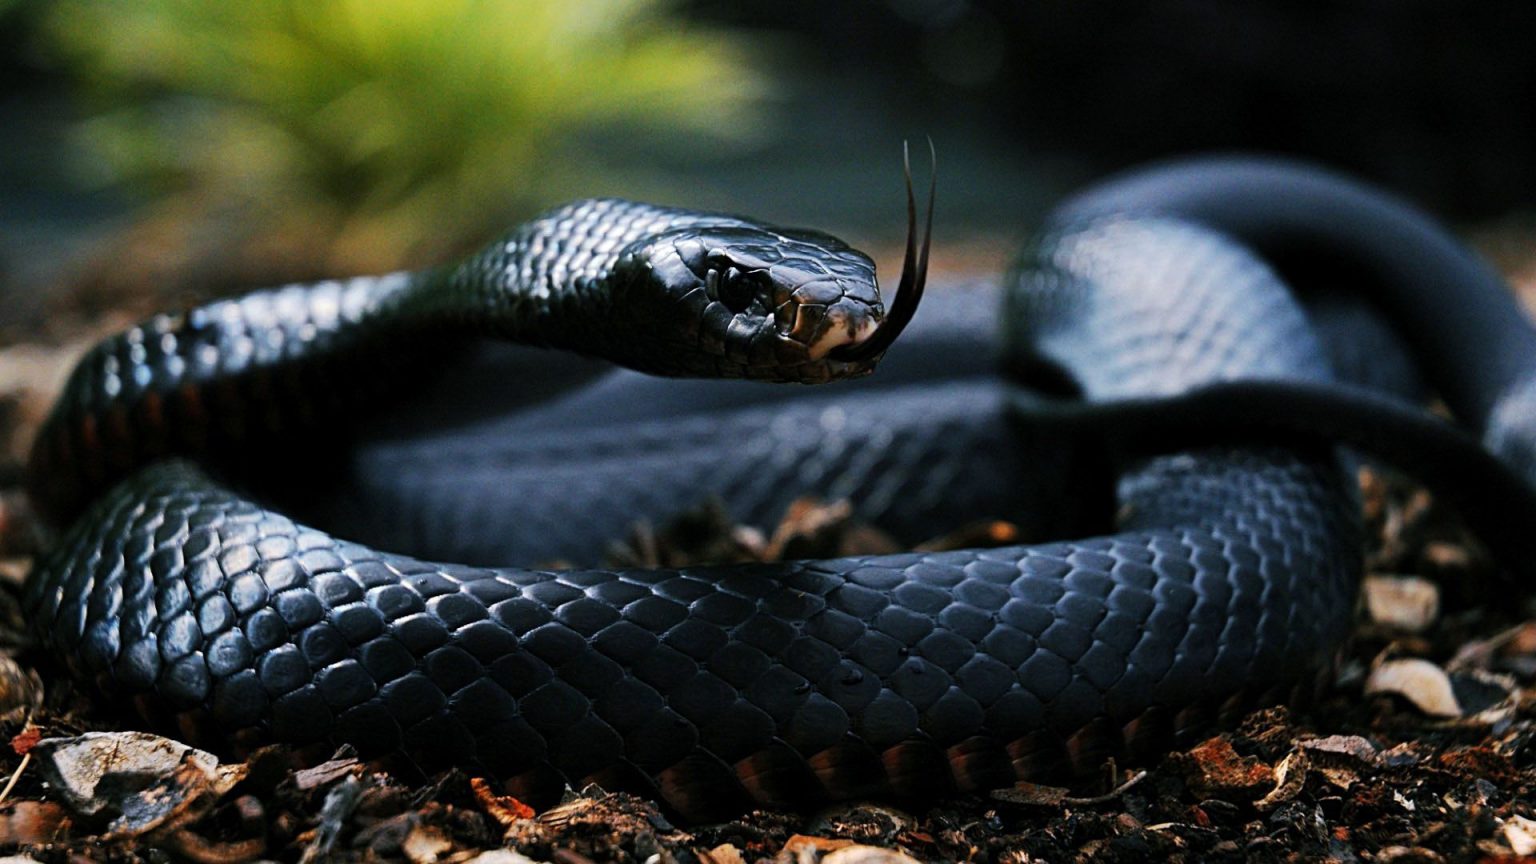 Tổng hợp hình ảnh về loài rắn đẹp nhất - [Kích thước hình ảnh: 1536x864 px]